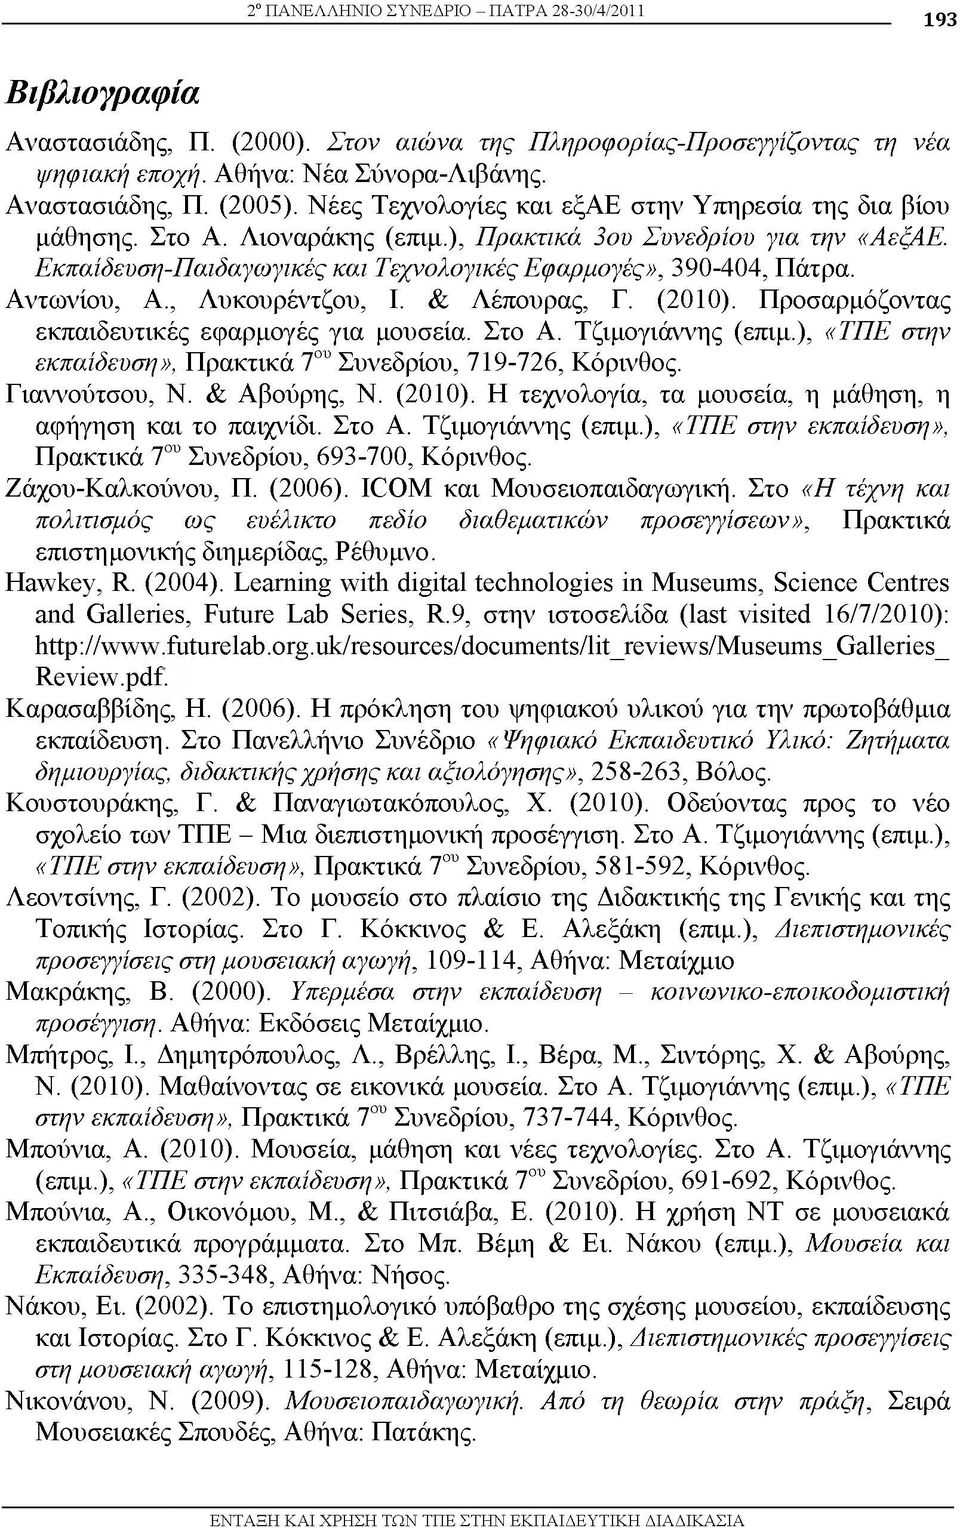 Αντωνίου, Α., Λυκουρέντζου, Ι. & Λέπουρας, Γ. (2010). Προσαρμόζοντας εκπαιδευτικές εφαρμογές για μουσεία. Στο Α. Τζιμογιάννης (επιμ.), «ΤΠΕ στην εκπαίδευση», Πρακτικά 7ου Συνεδρίου, 719-726, Κόρινθος.